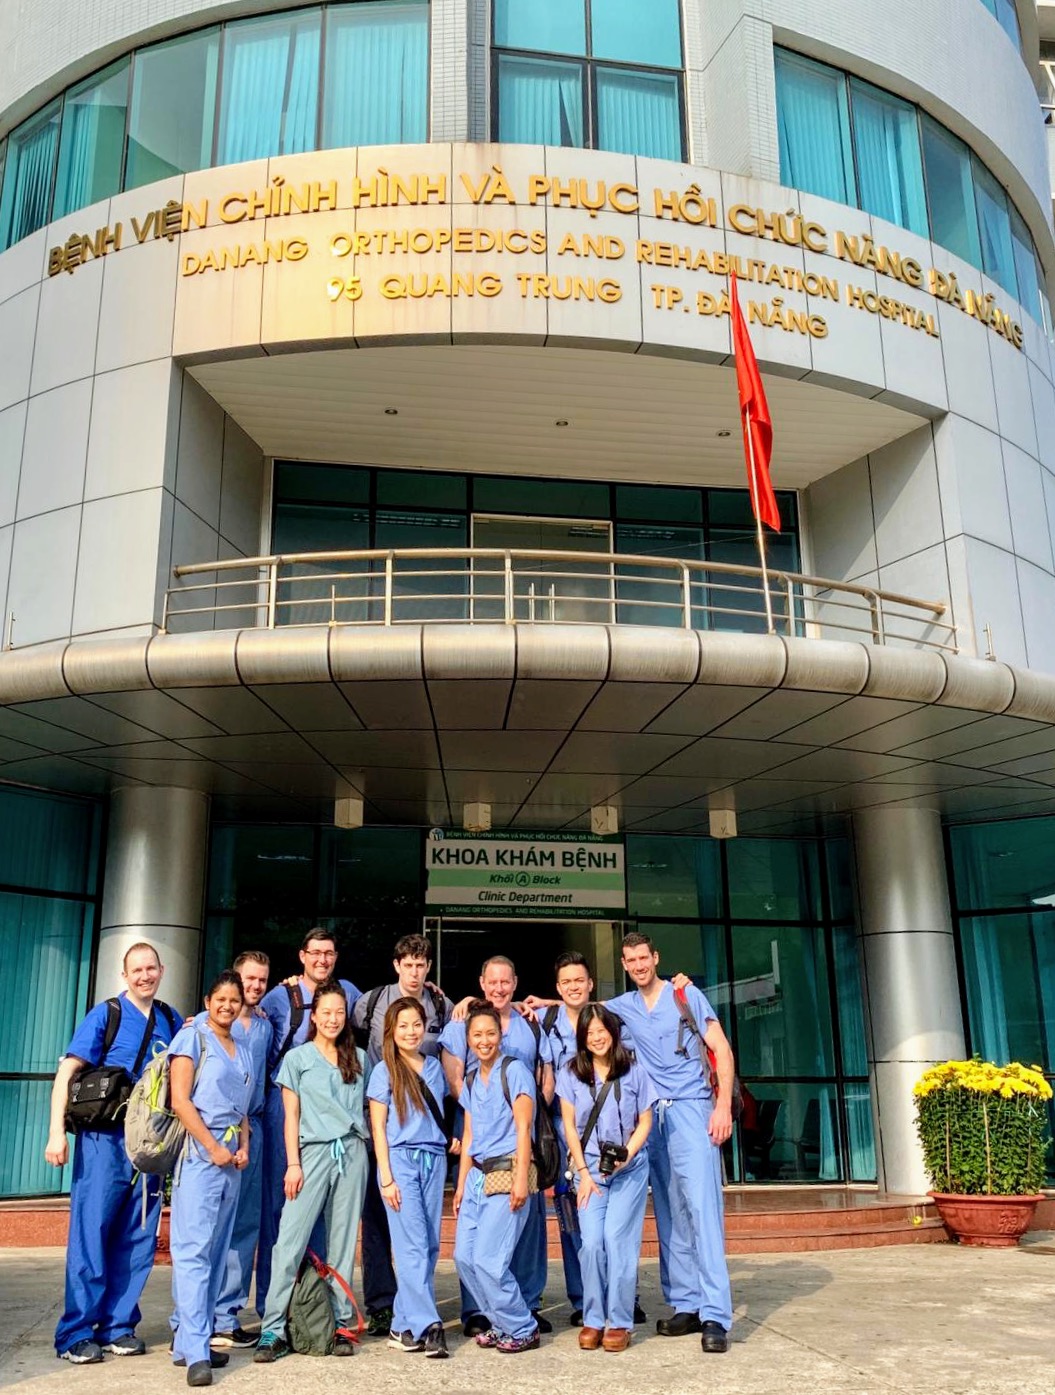 Vietnam Hand Surgery Trip – 2019 Summary